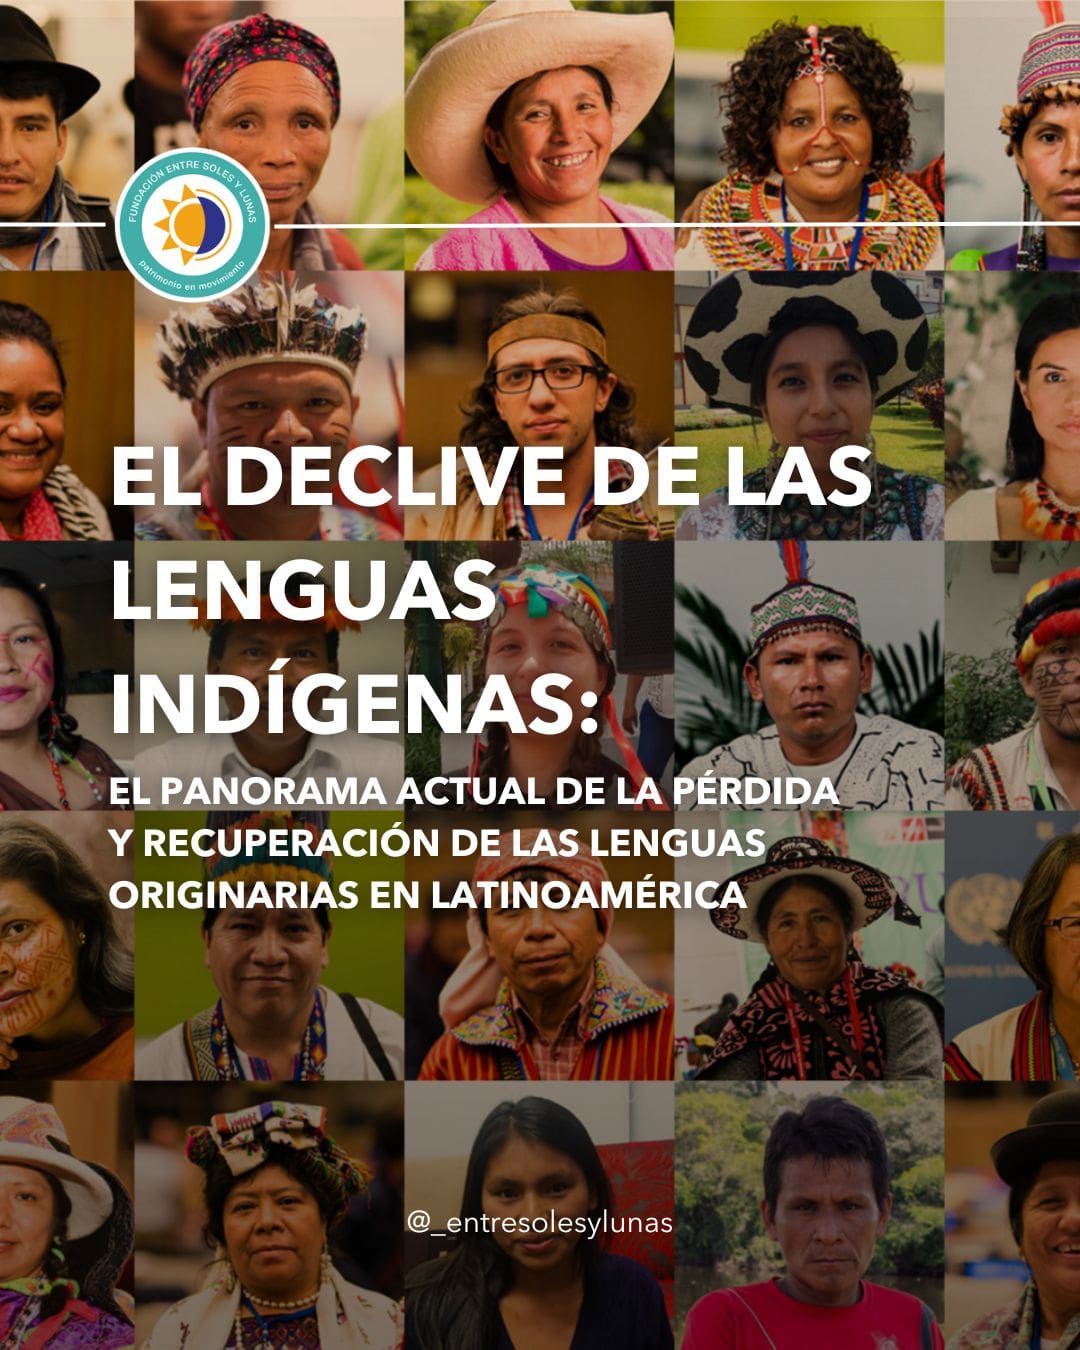 La importancia de preservar las lenguas indígenas de Latinoamérica